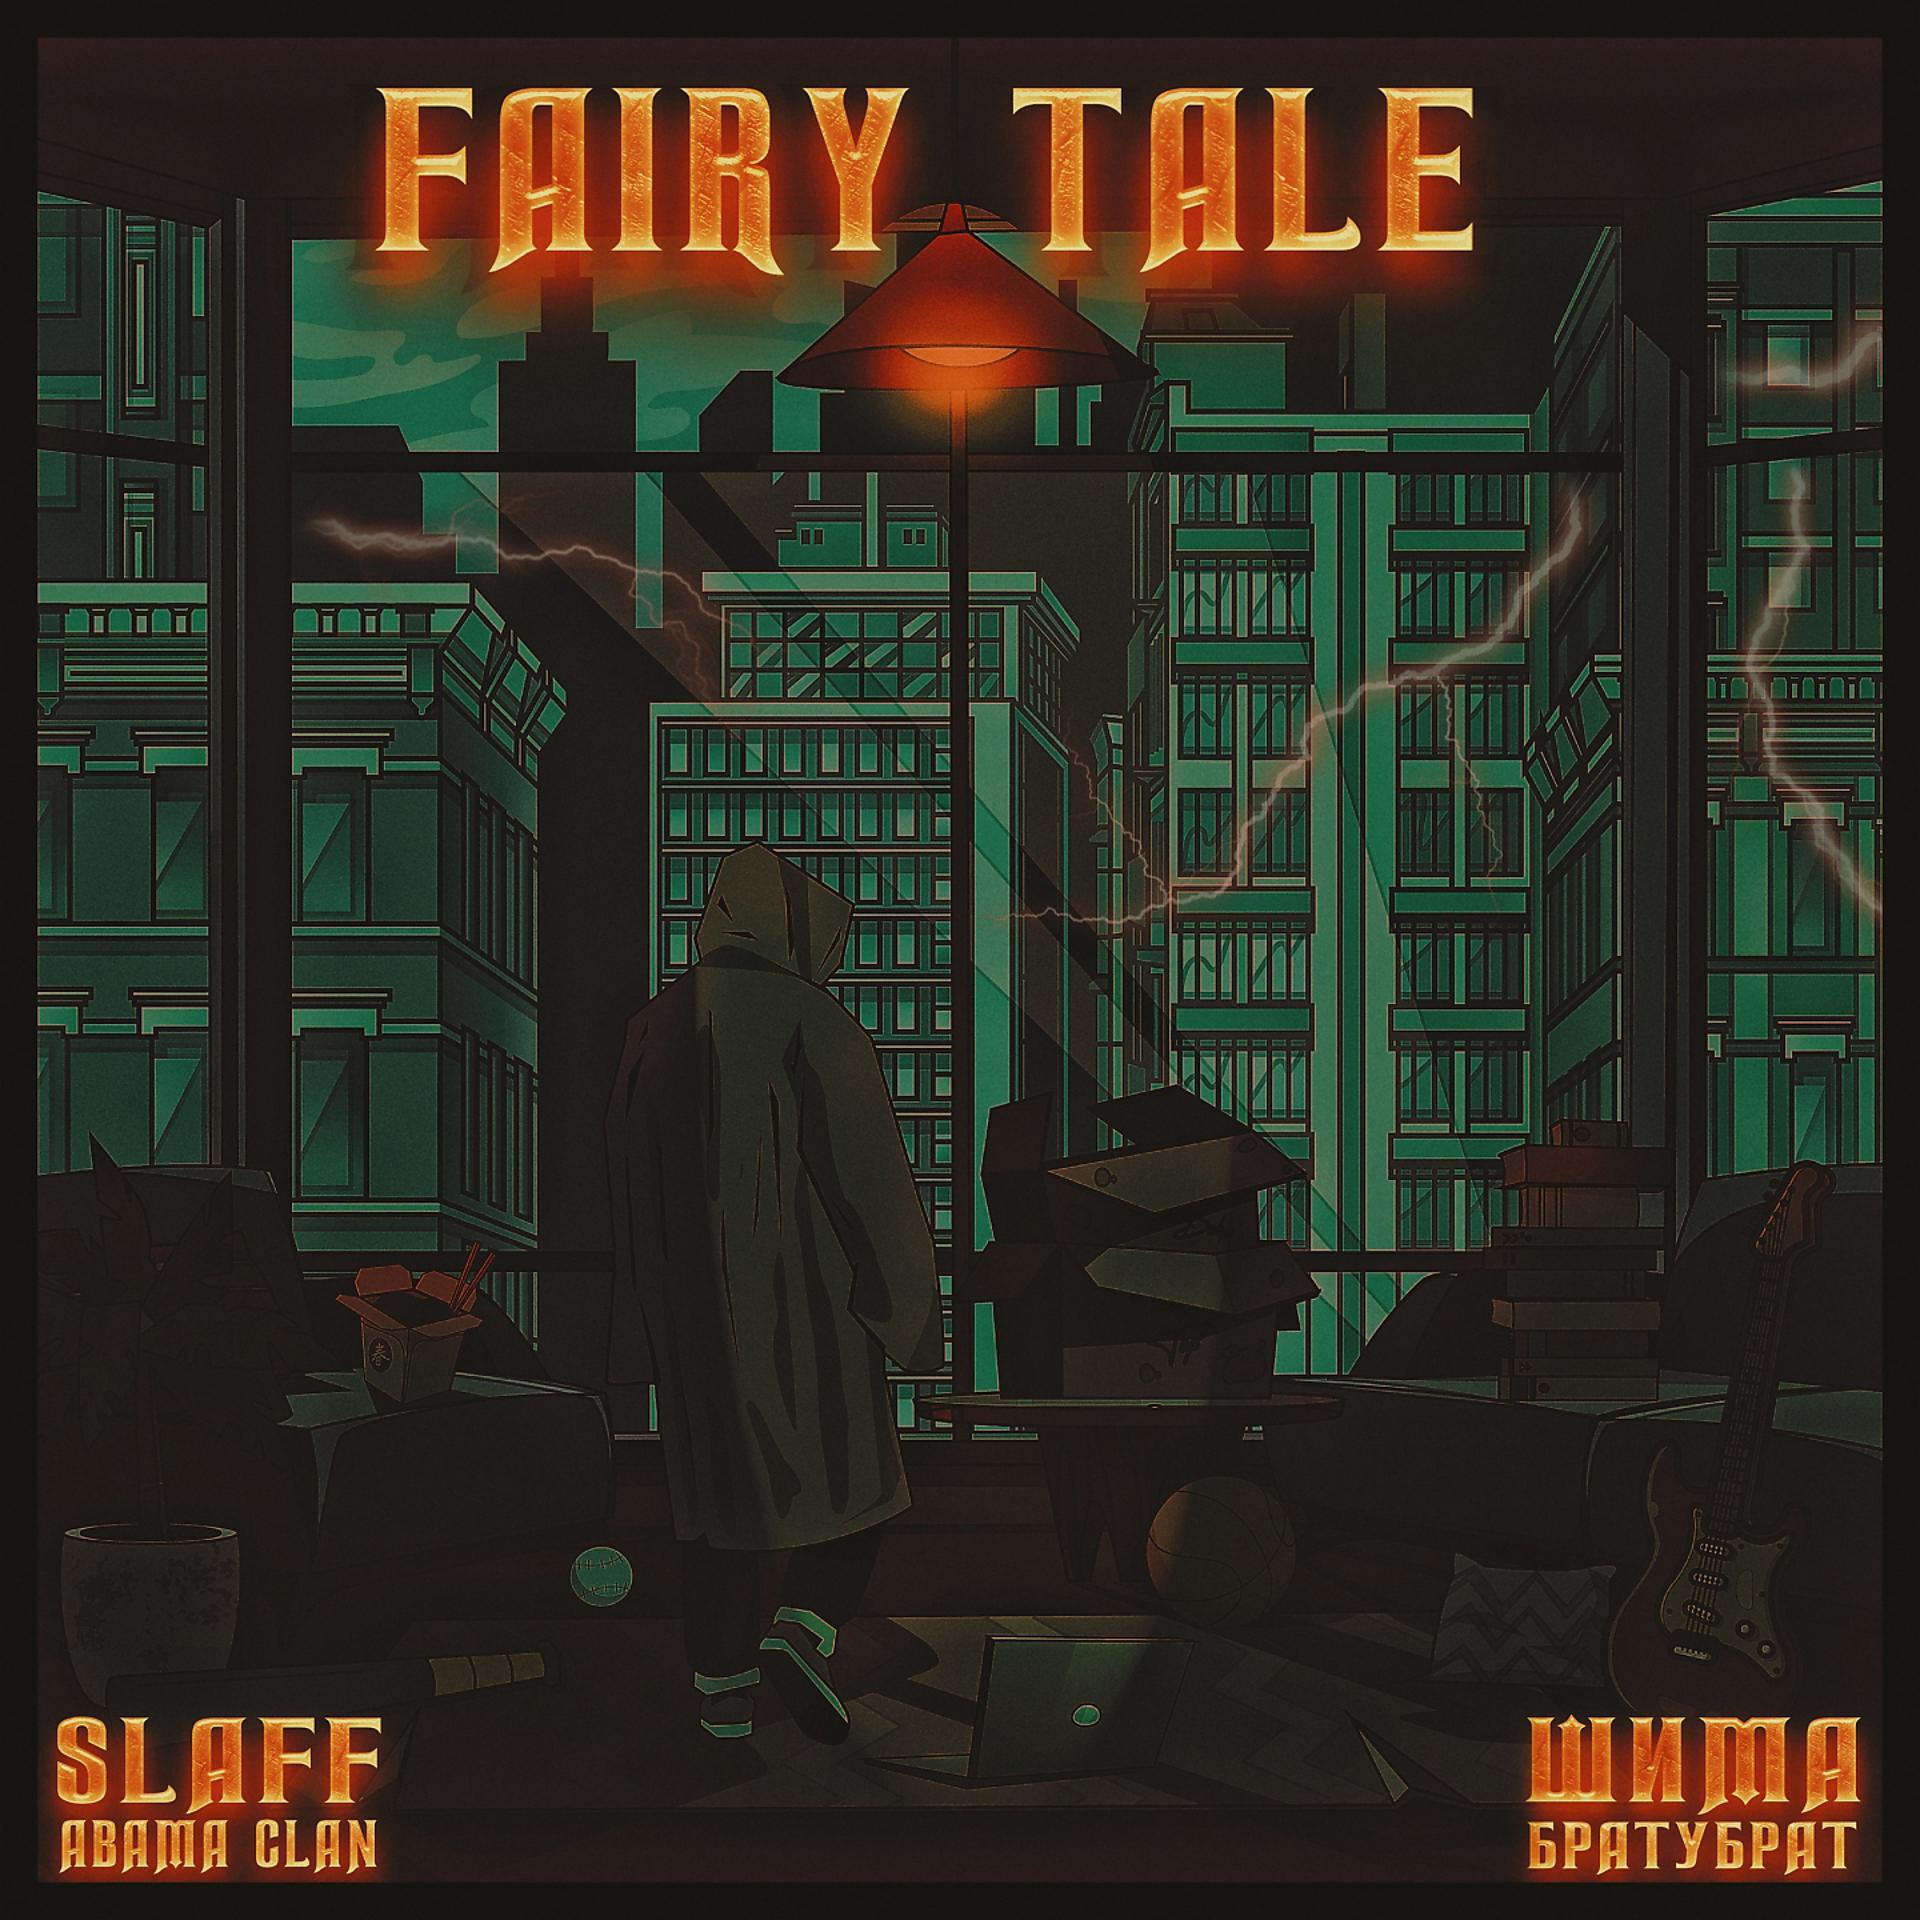 Постер к треку Шима, Slaff - Fairy Tale